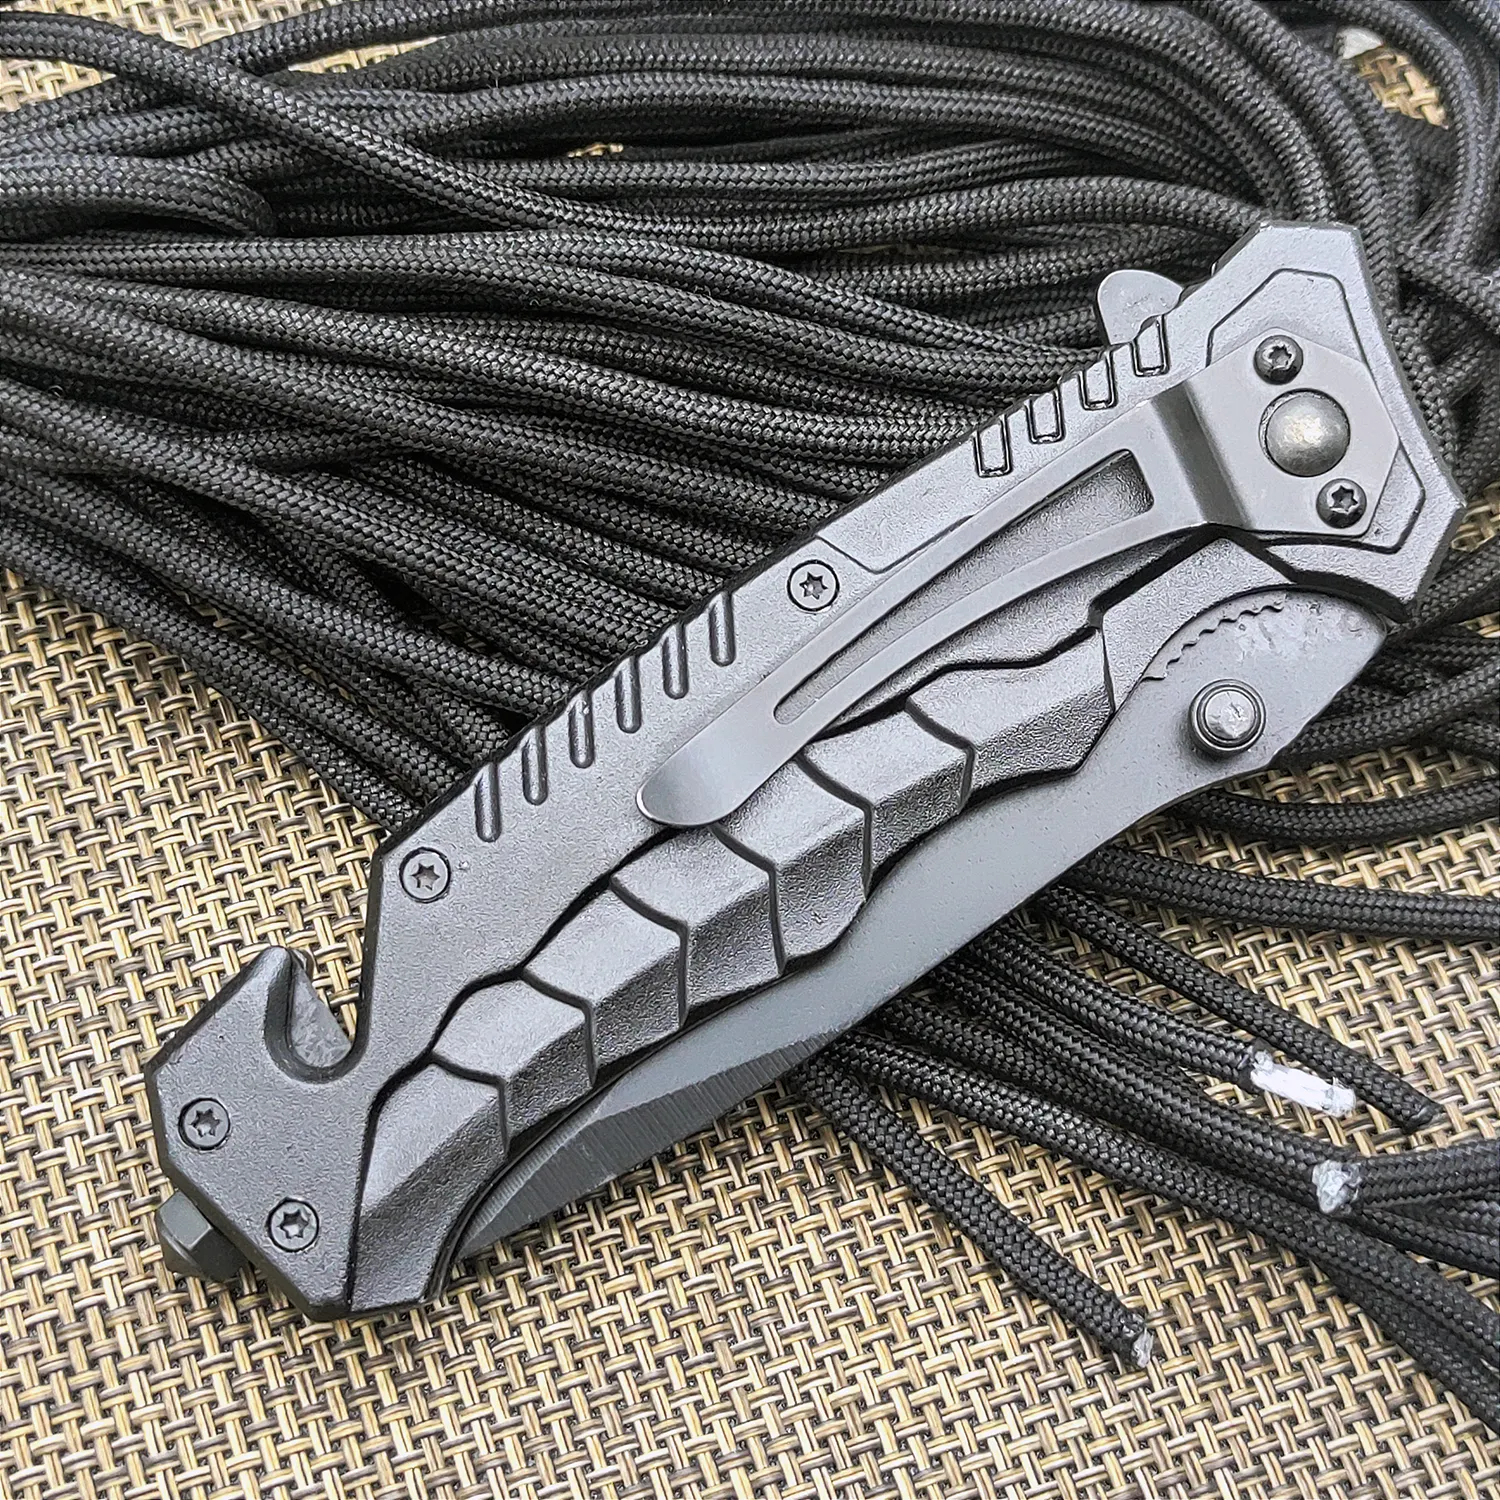 새로운 디자인 핫 셀러 전술 칼 포켓 스테인레스 스틸 블레이드가있는 접이식 사냥 칼 사용자 정의 할 수